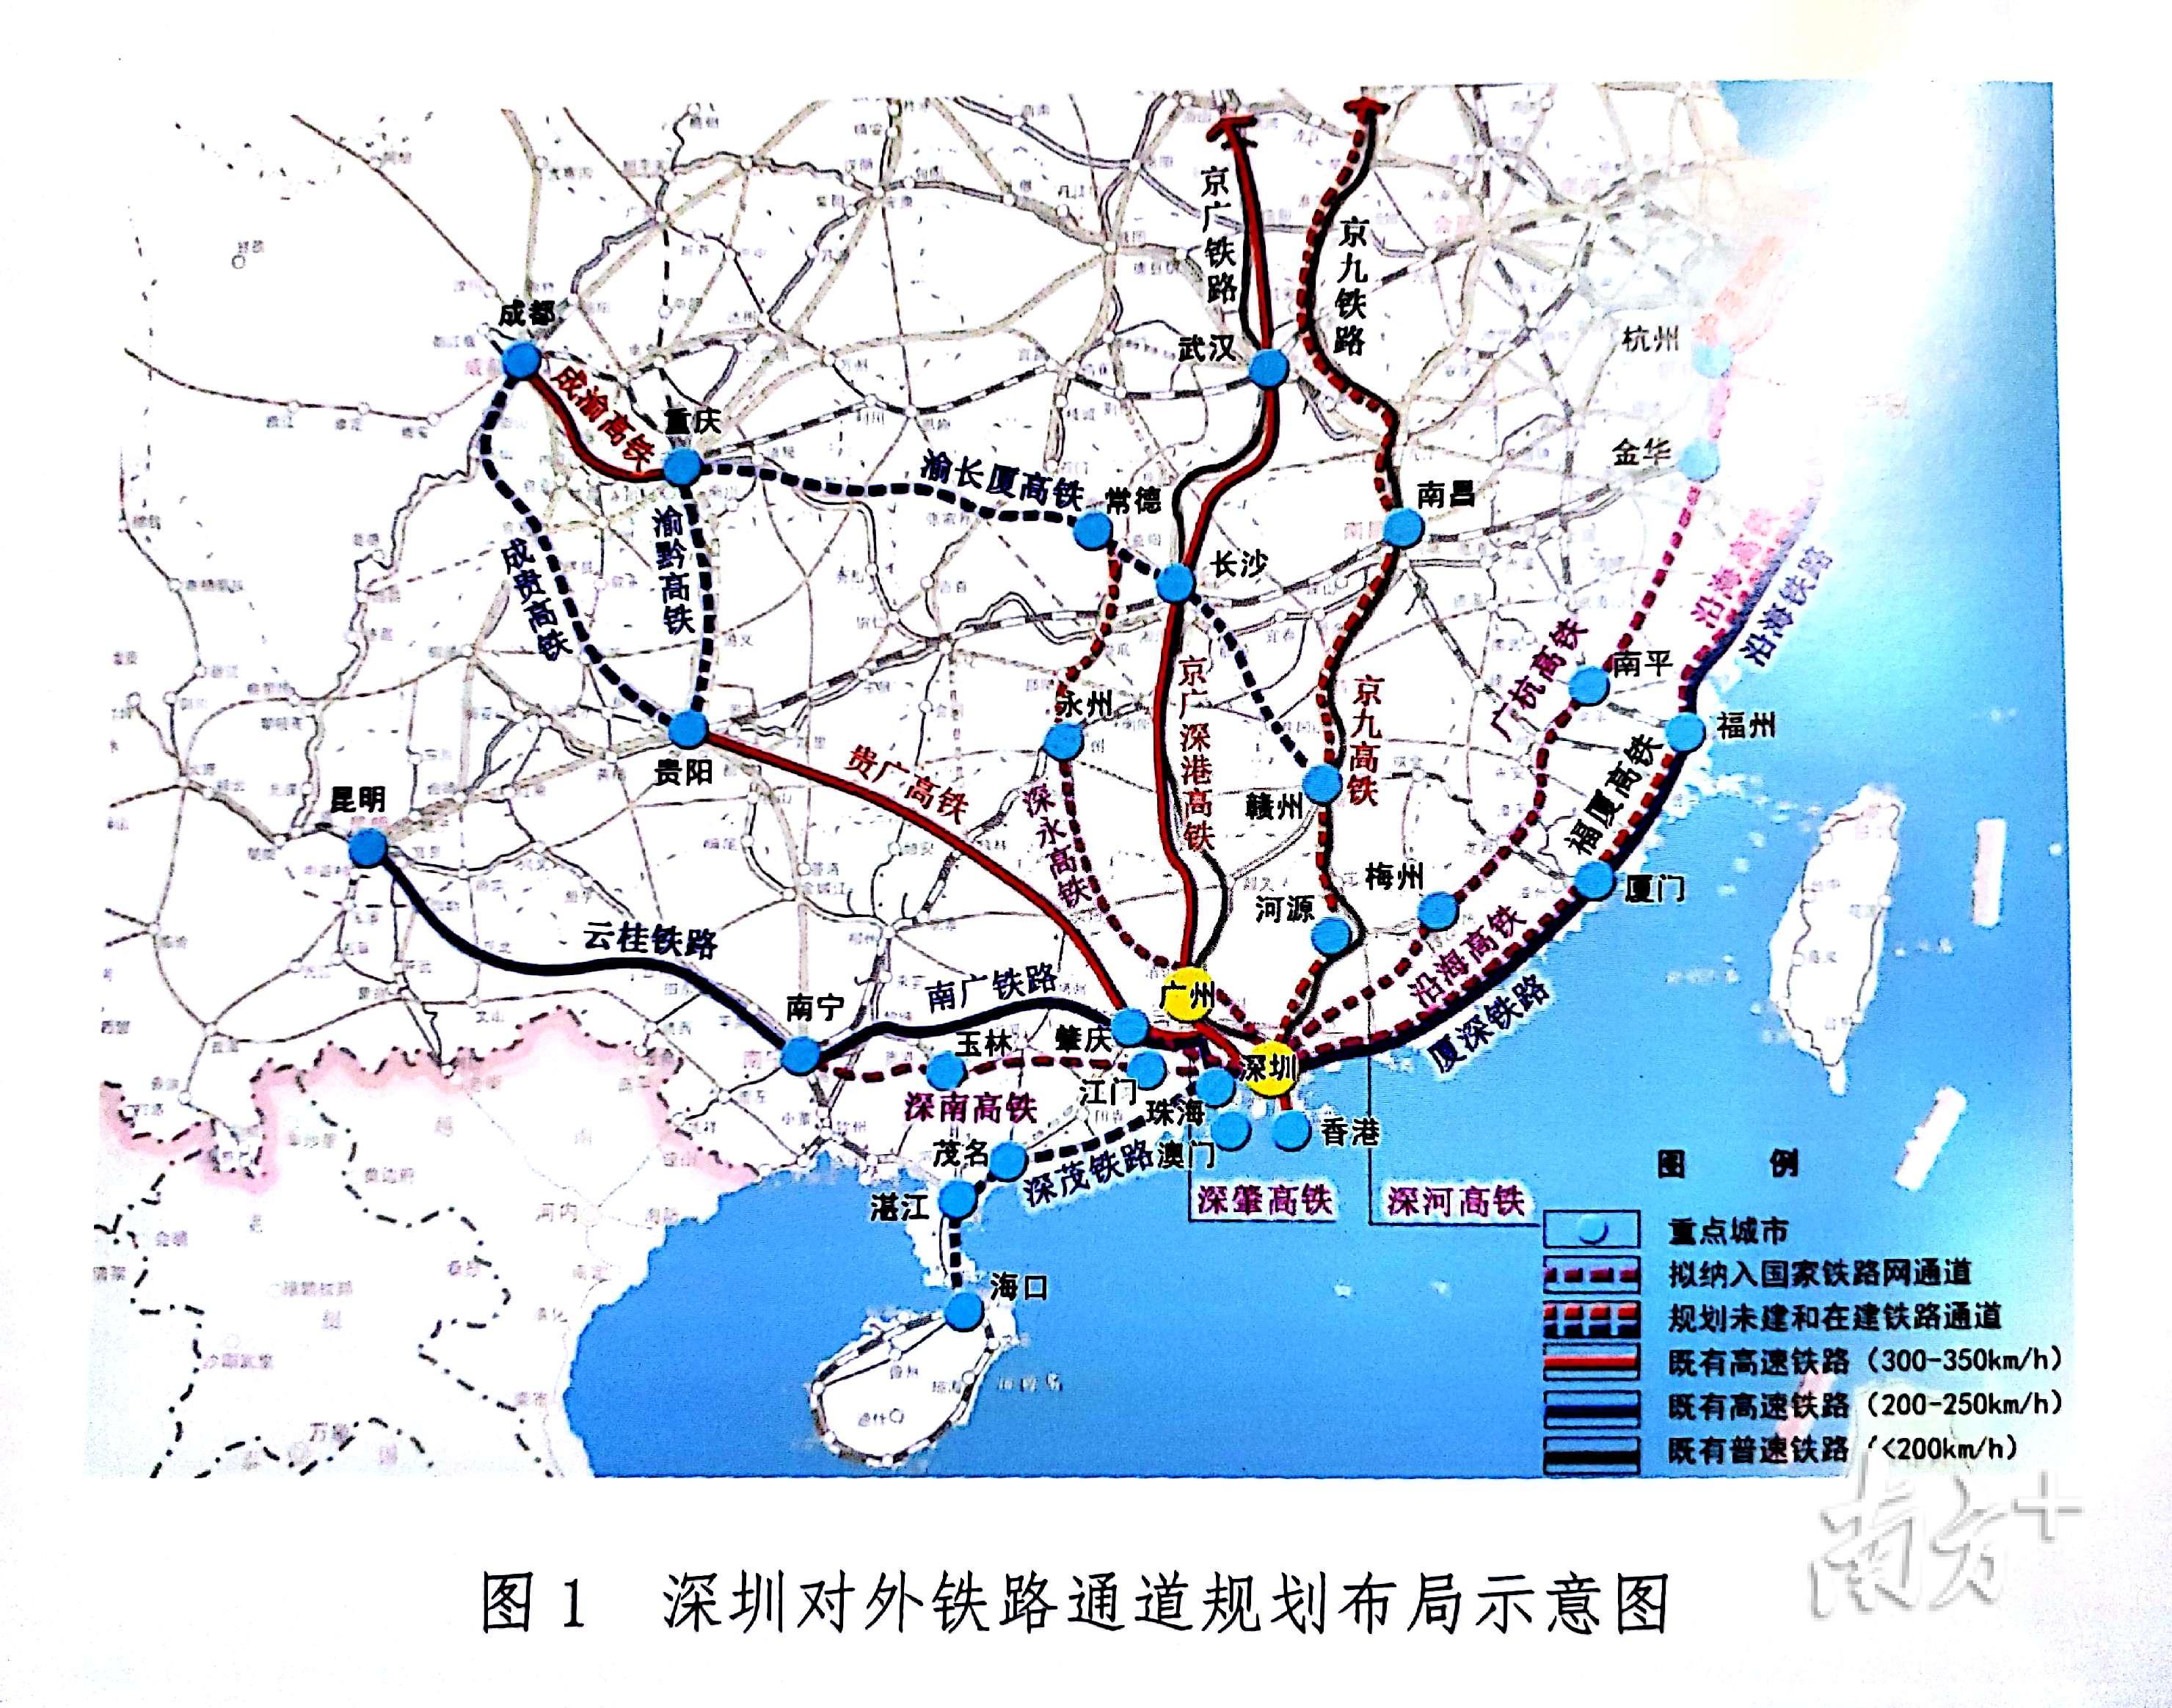 规划提出加快推进深茂铁路,赣深客专,广汕高铁,研究新增深圳快速直达